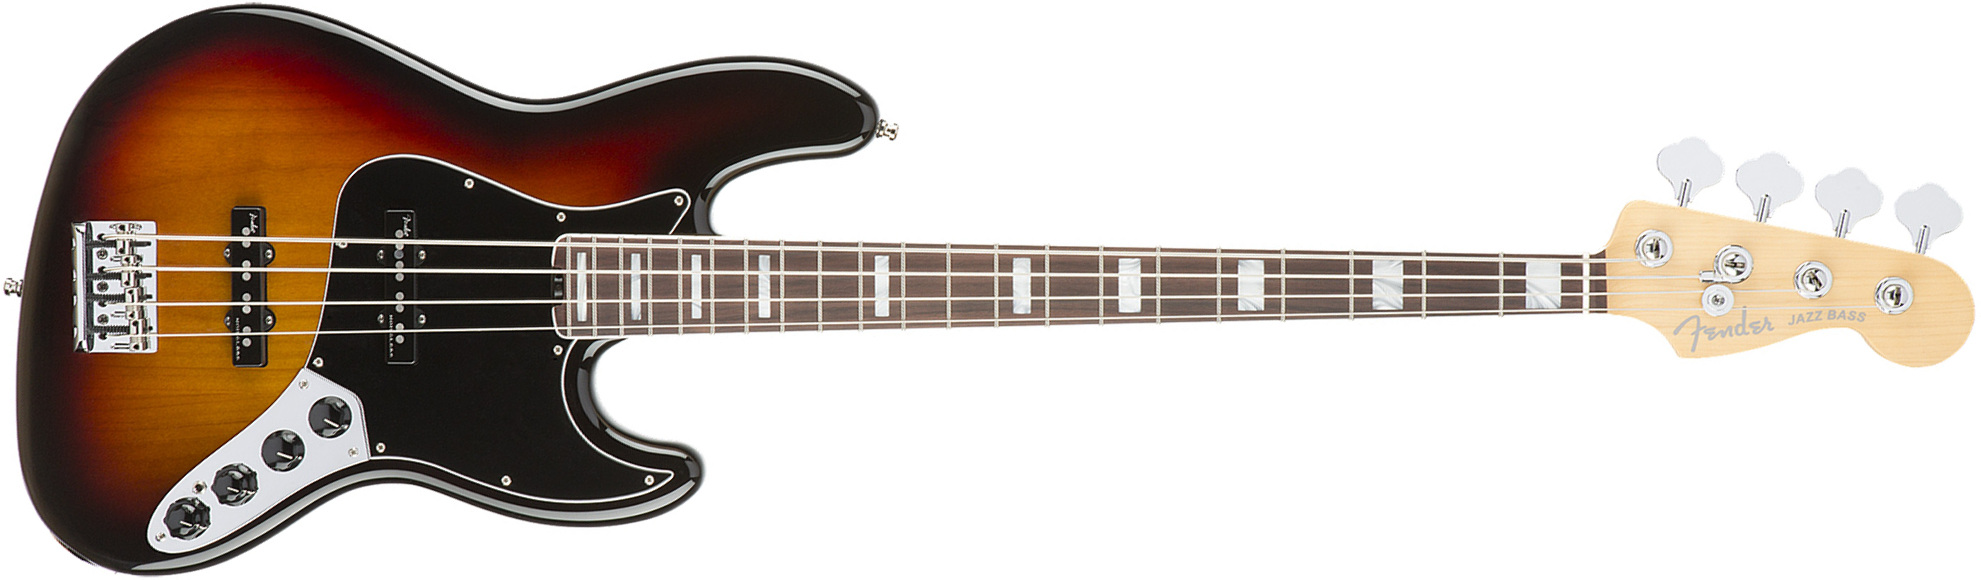 Fender Jazz Bass American Elite 2016 (usa, Rw) - 3-color Sunburst - Basse Électrique Solid Body - Main picture